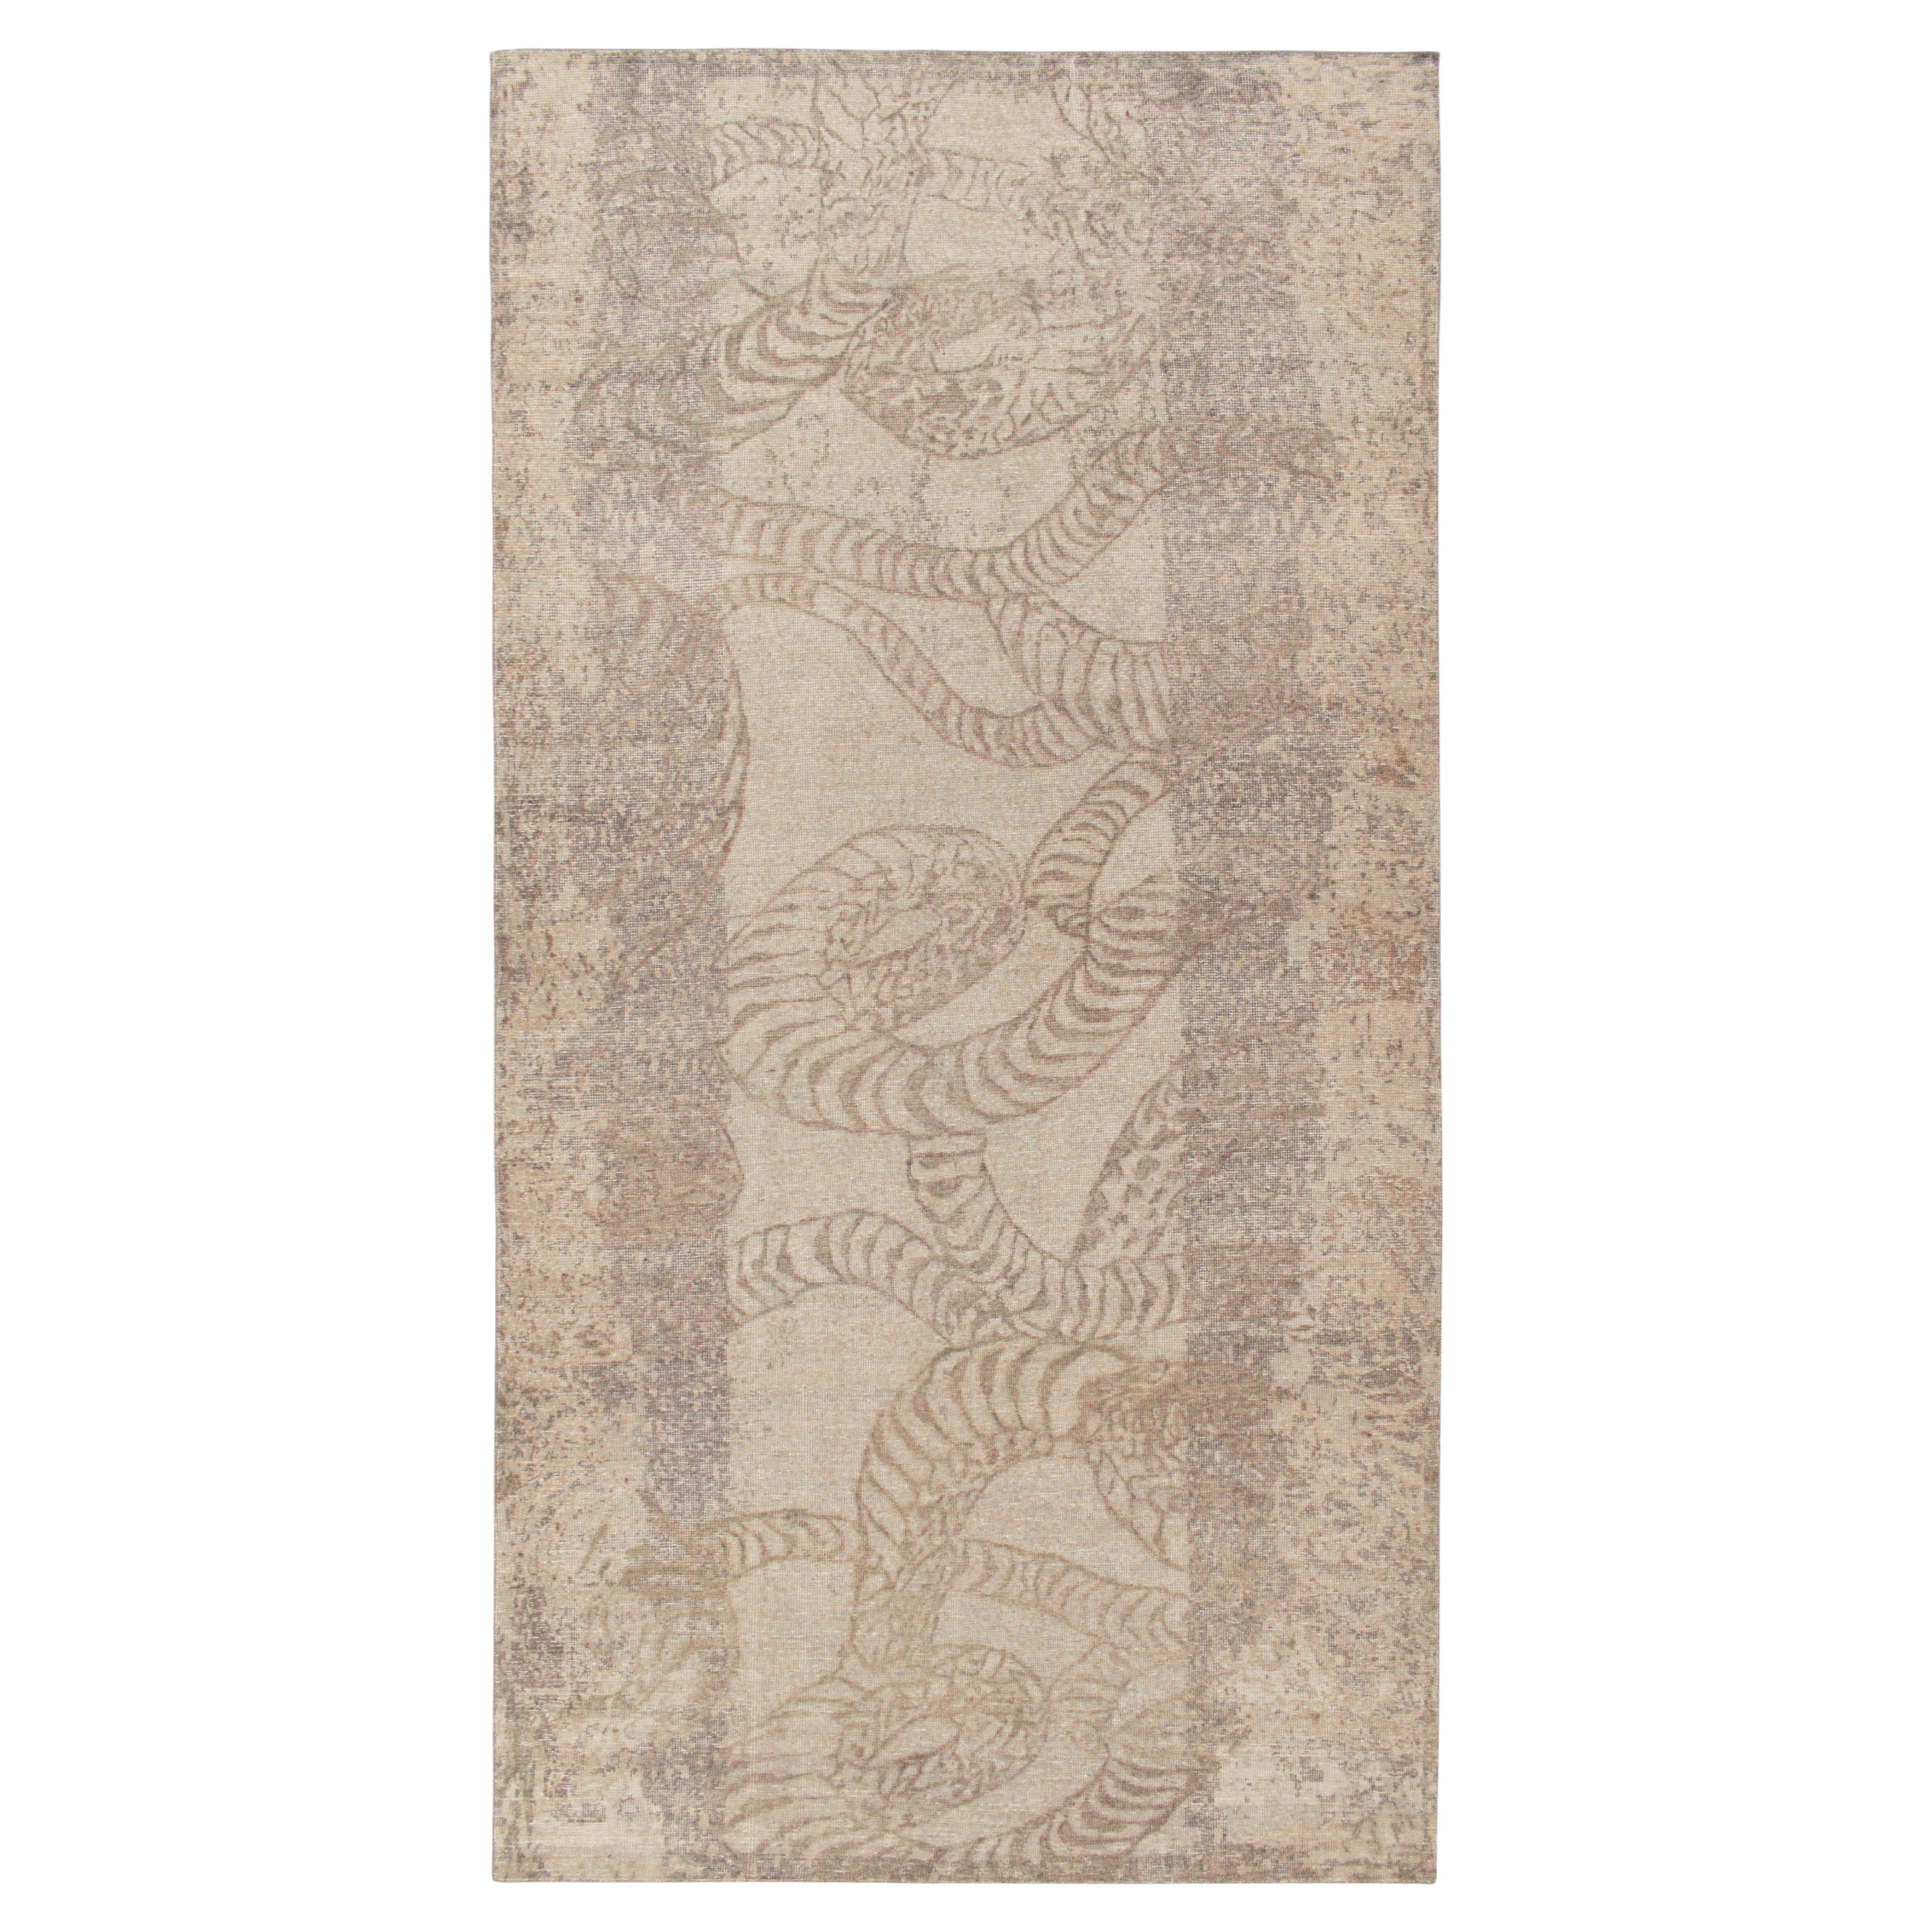 Abstrakter Teppich & Kelim-Teppich im Distressed-Stil mit beige-braunem und grauem Muster